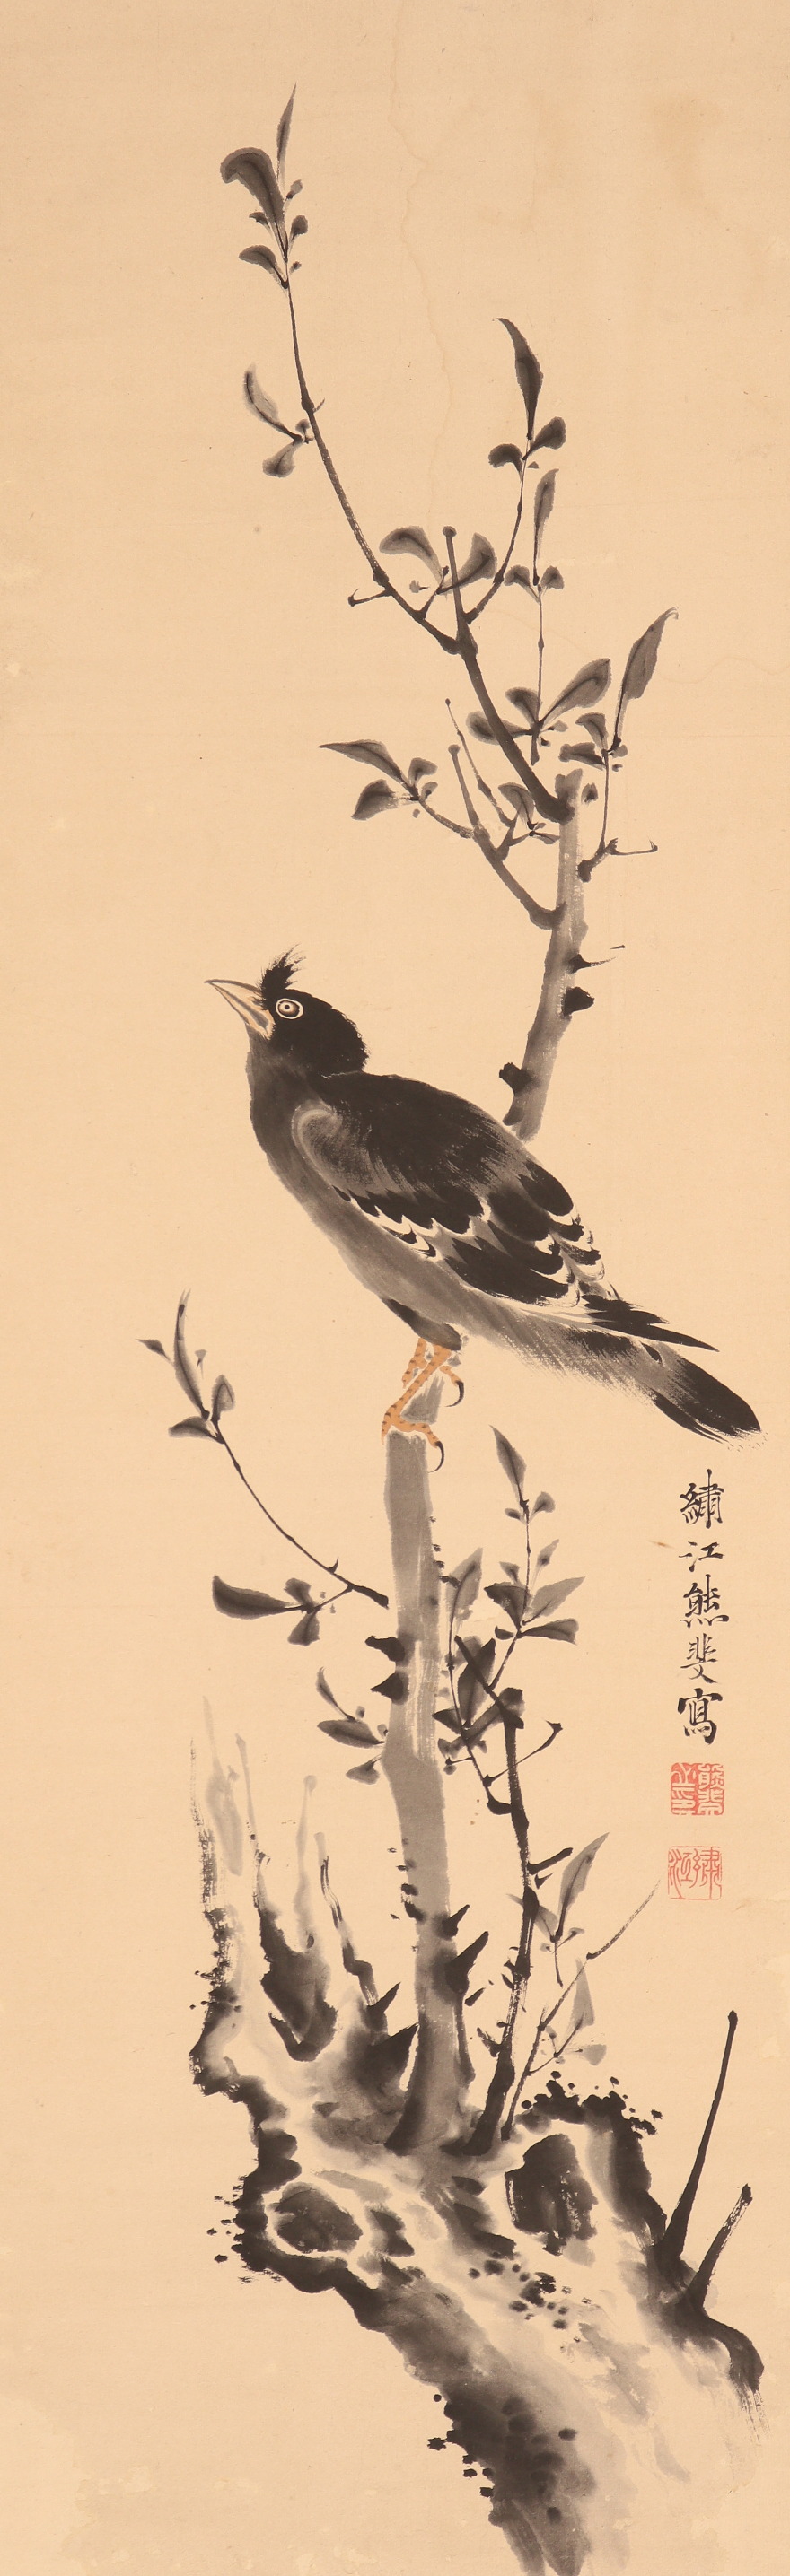 【模写】【伝来】b7061〈熊代熊斐〉八哥鸟図 中国画